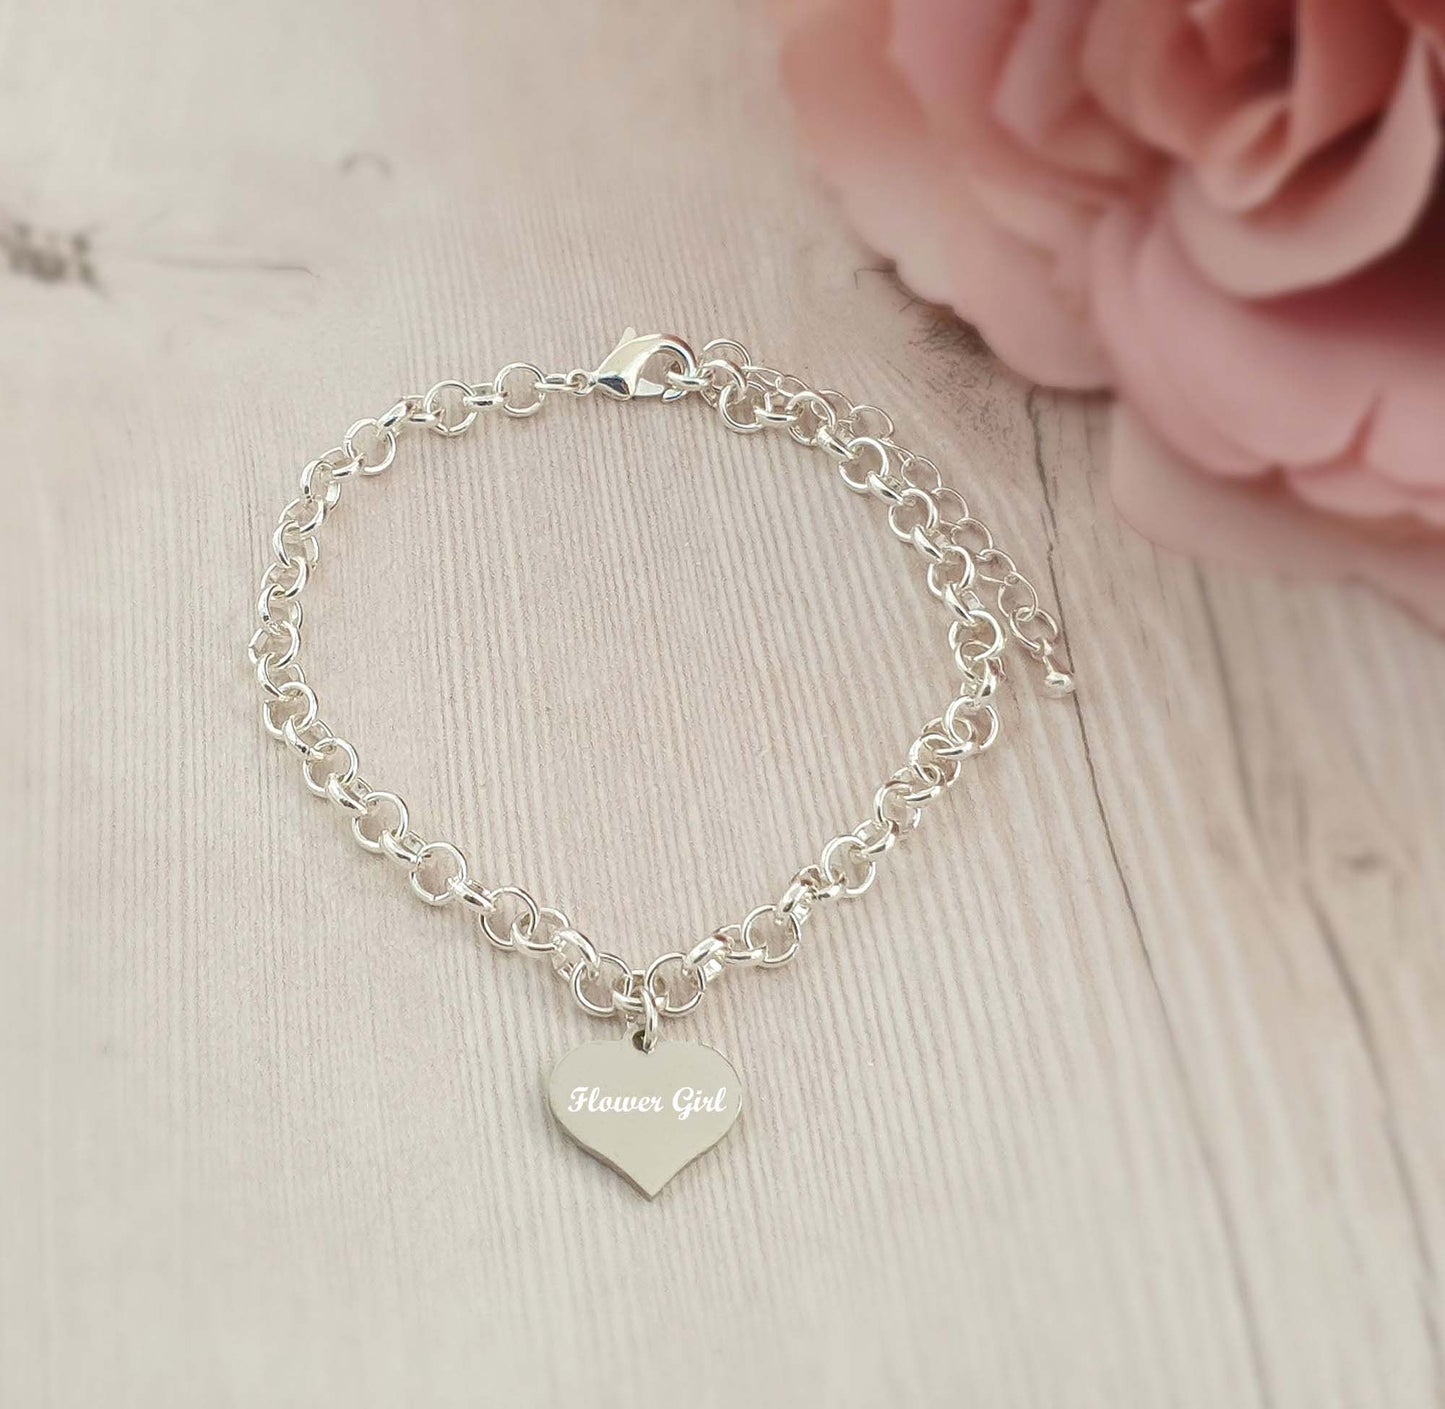 Flower Girl Engraved Heart Charm Link Bracelet, Wedding Gift for Girl's